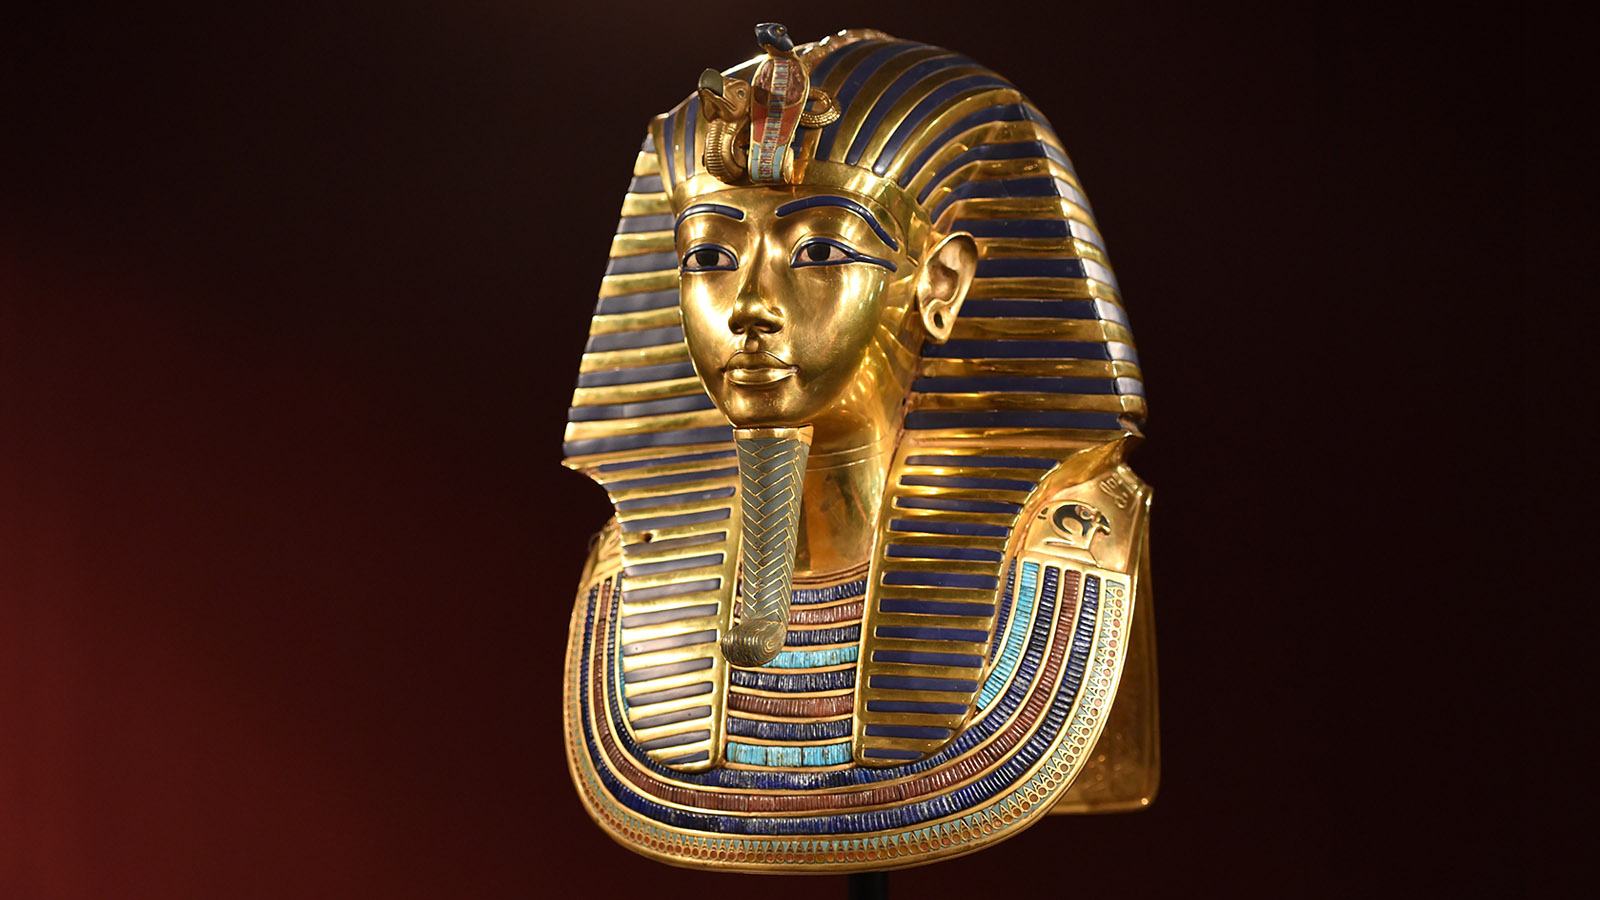 <p>Погребальная маска египетского фараона Тутанхамона. Демонстрировалась на выставке Tutanchamun&nbsp;&mdash; Sein Grab und die Schaetze в Малом олимпийском зале в 2015 году в Мюнхене</p>